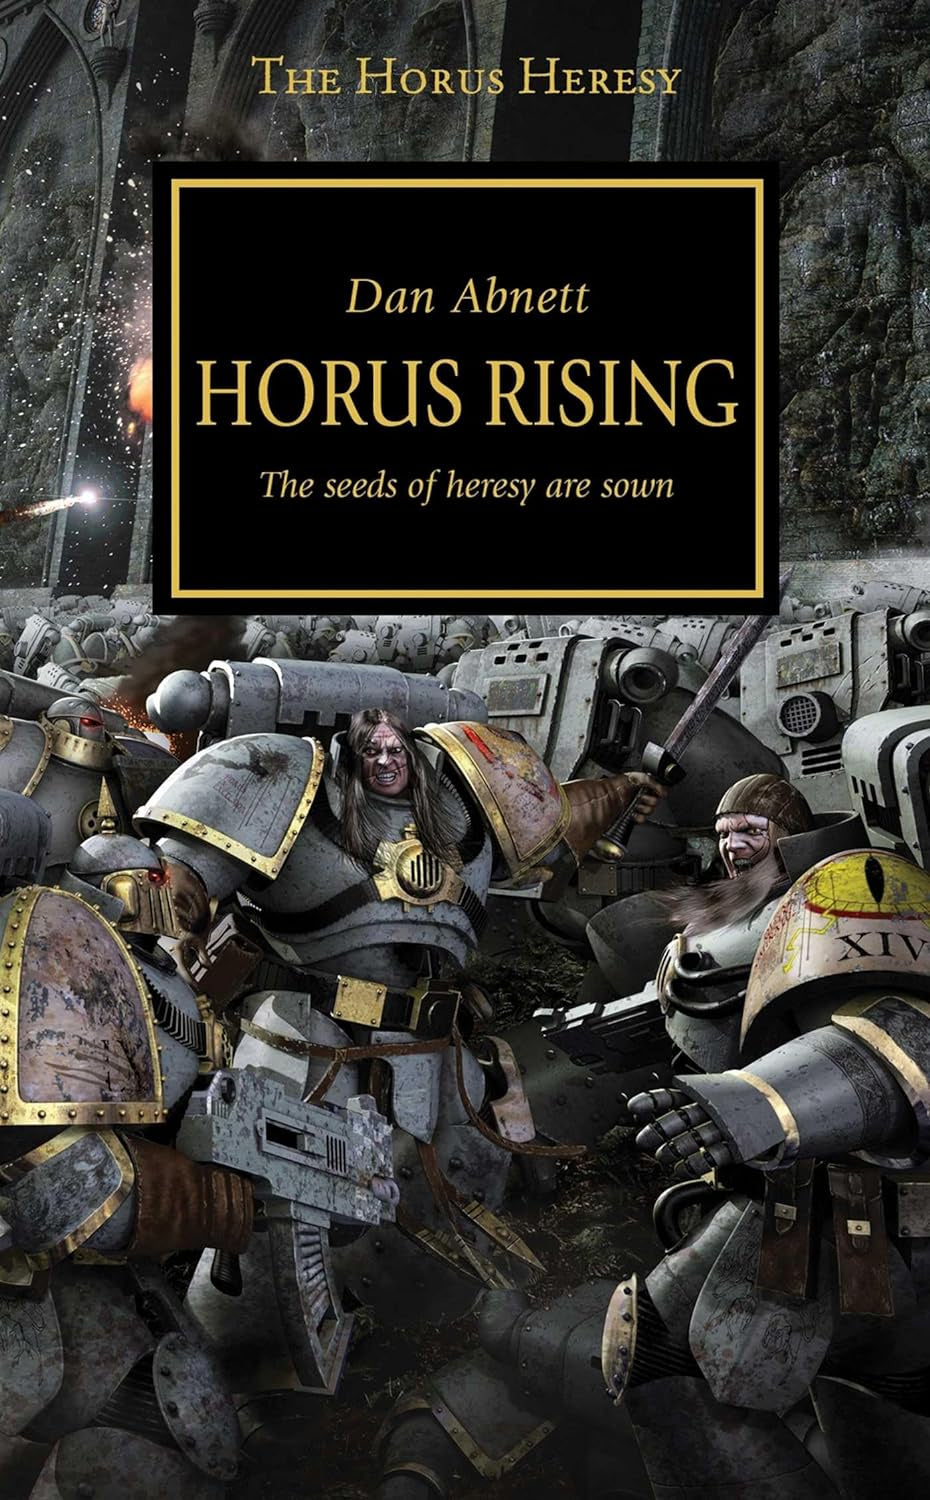 THE HORUS HERESY: HORUS RISING; Book 1 DAN ABNETT